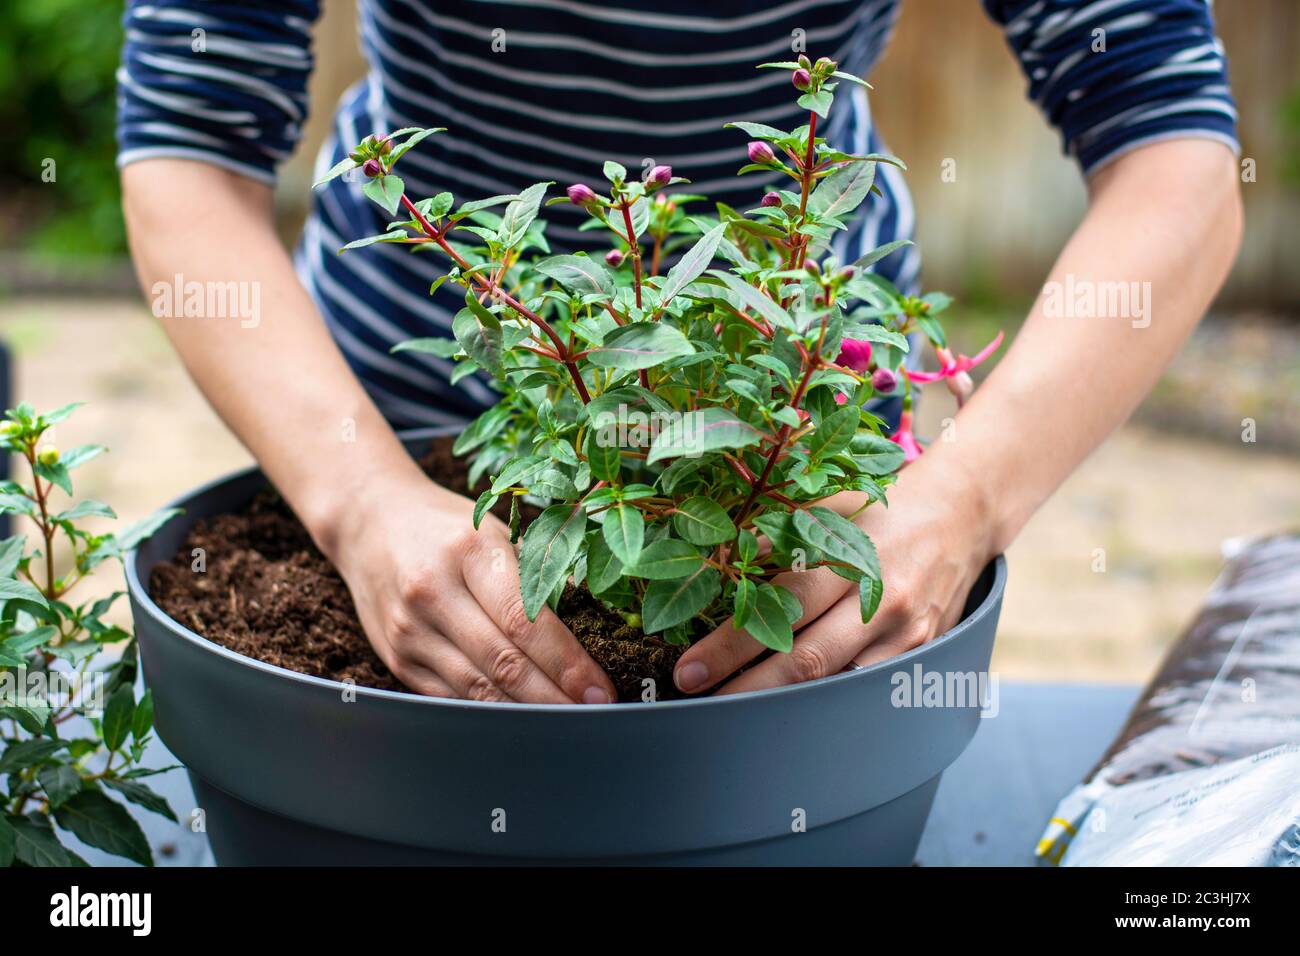 Mujer trabajando fuera en un jardín plantando plantas de flores jóvenes en una plantadora. Las manos de la mujer plantan fuera planta floreciente. Replantando / poniendo plantas Foto de stock